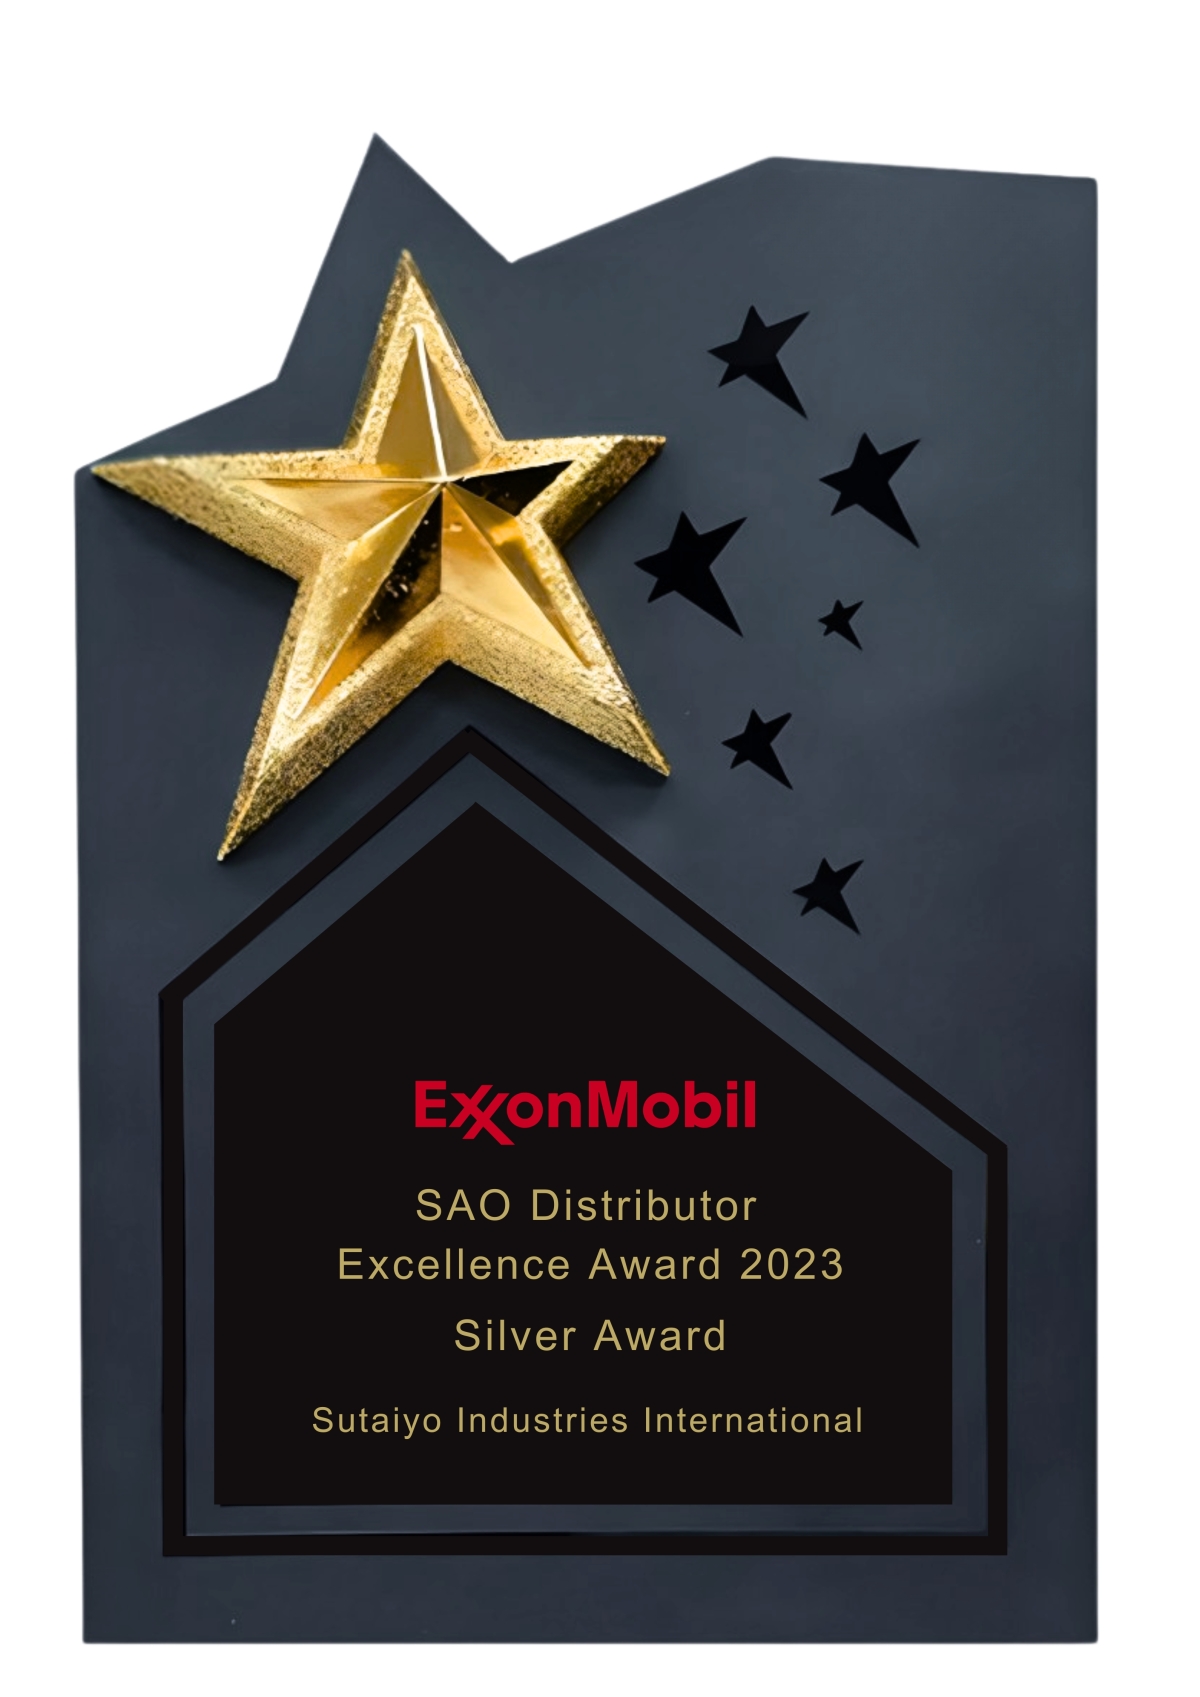 ExxonMobil SAO Distributor Excellence Award 2023 Silver Award